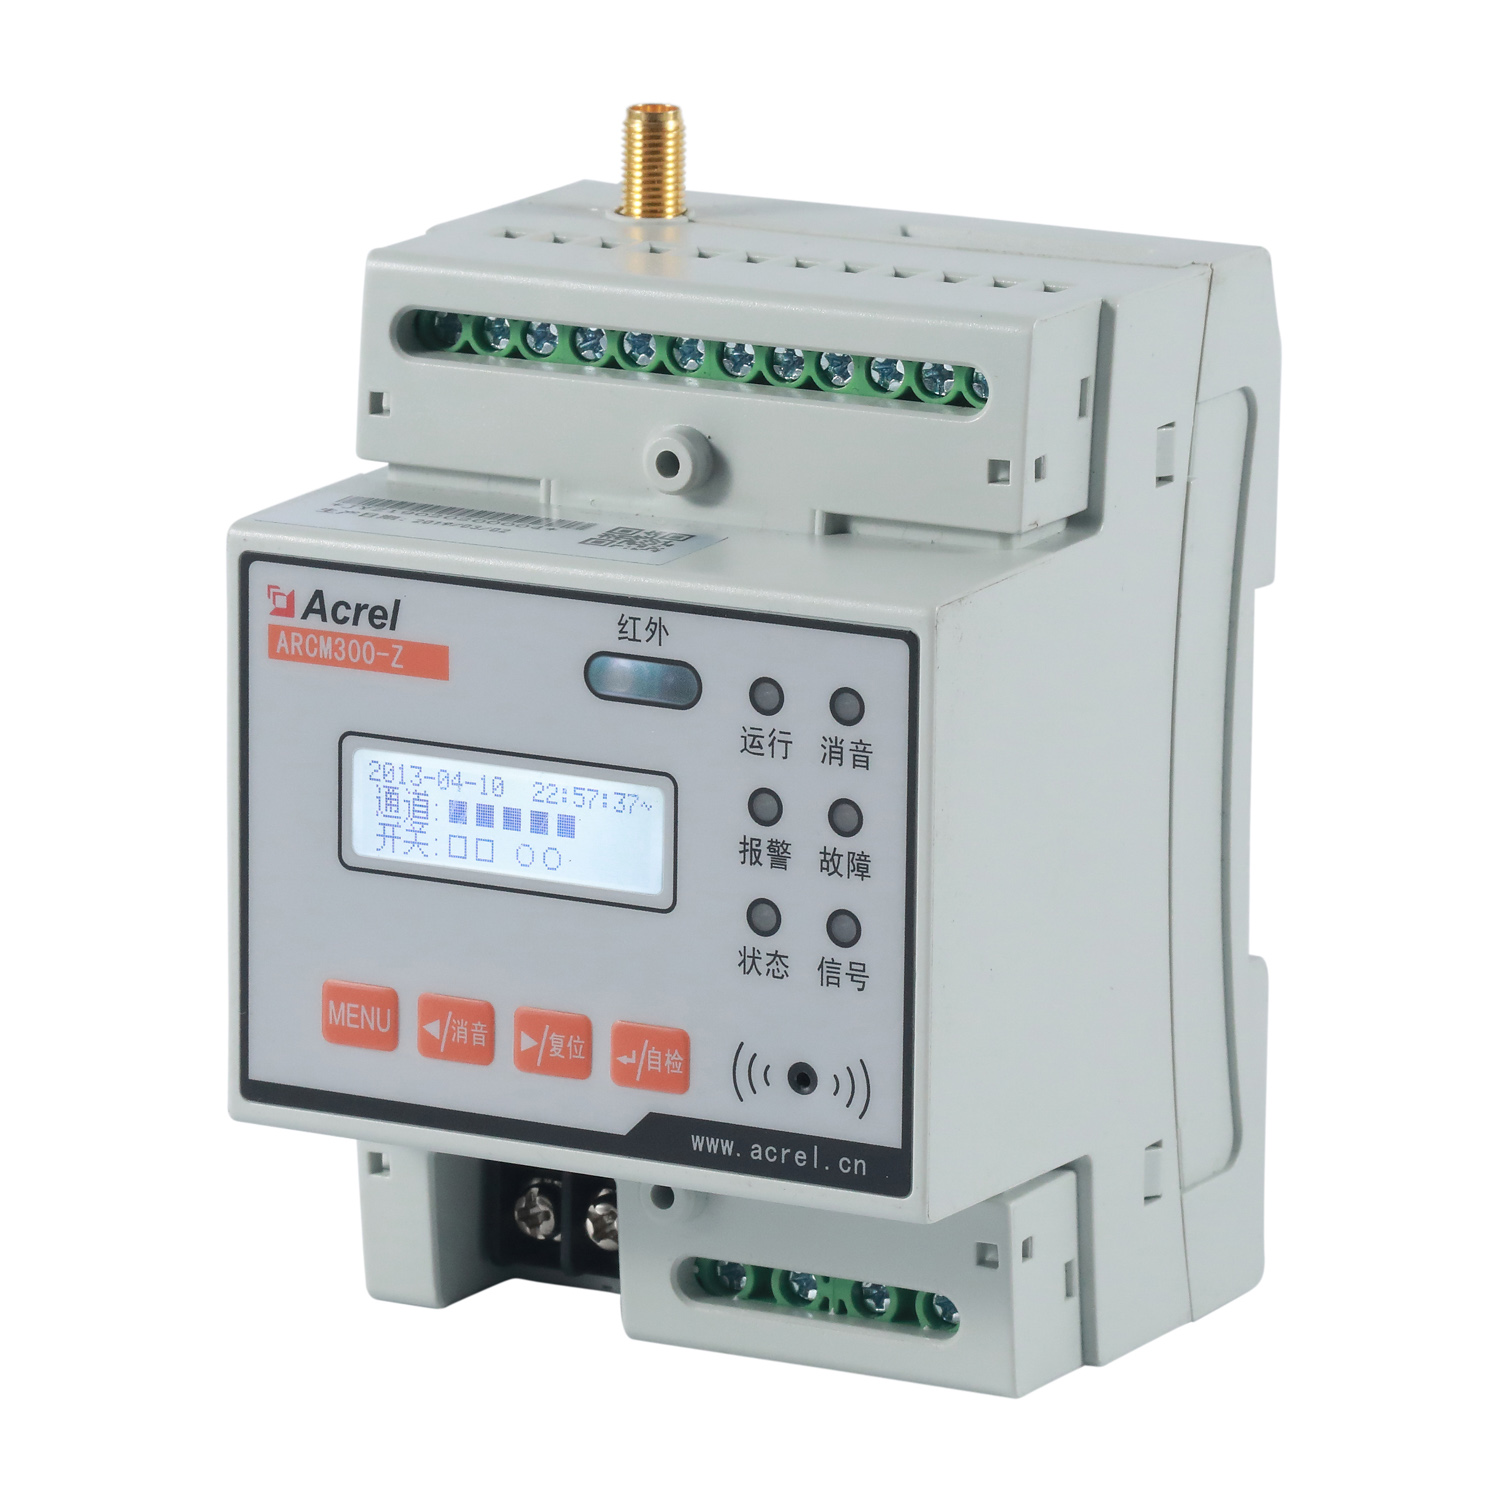 安科瑞ARCM300-Z-4G工厂智慧用电监控装置 100A漏电流监测 断电报警上传